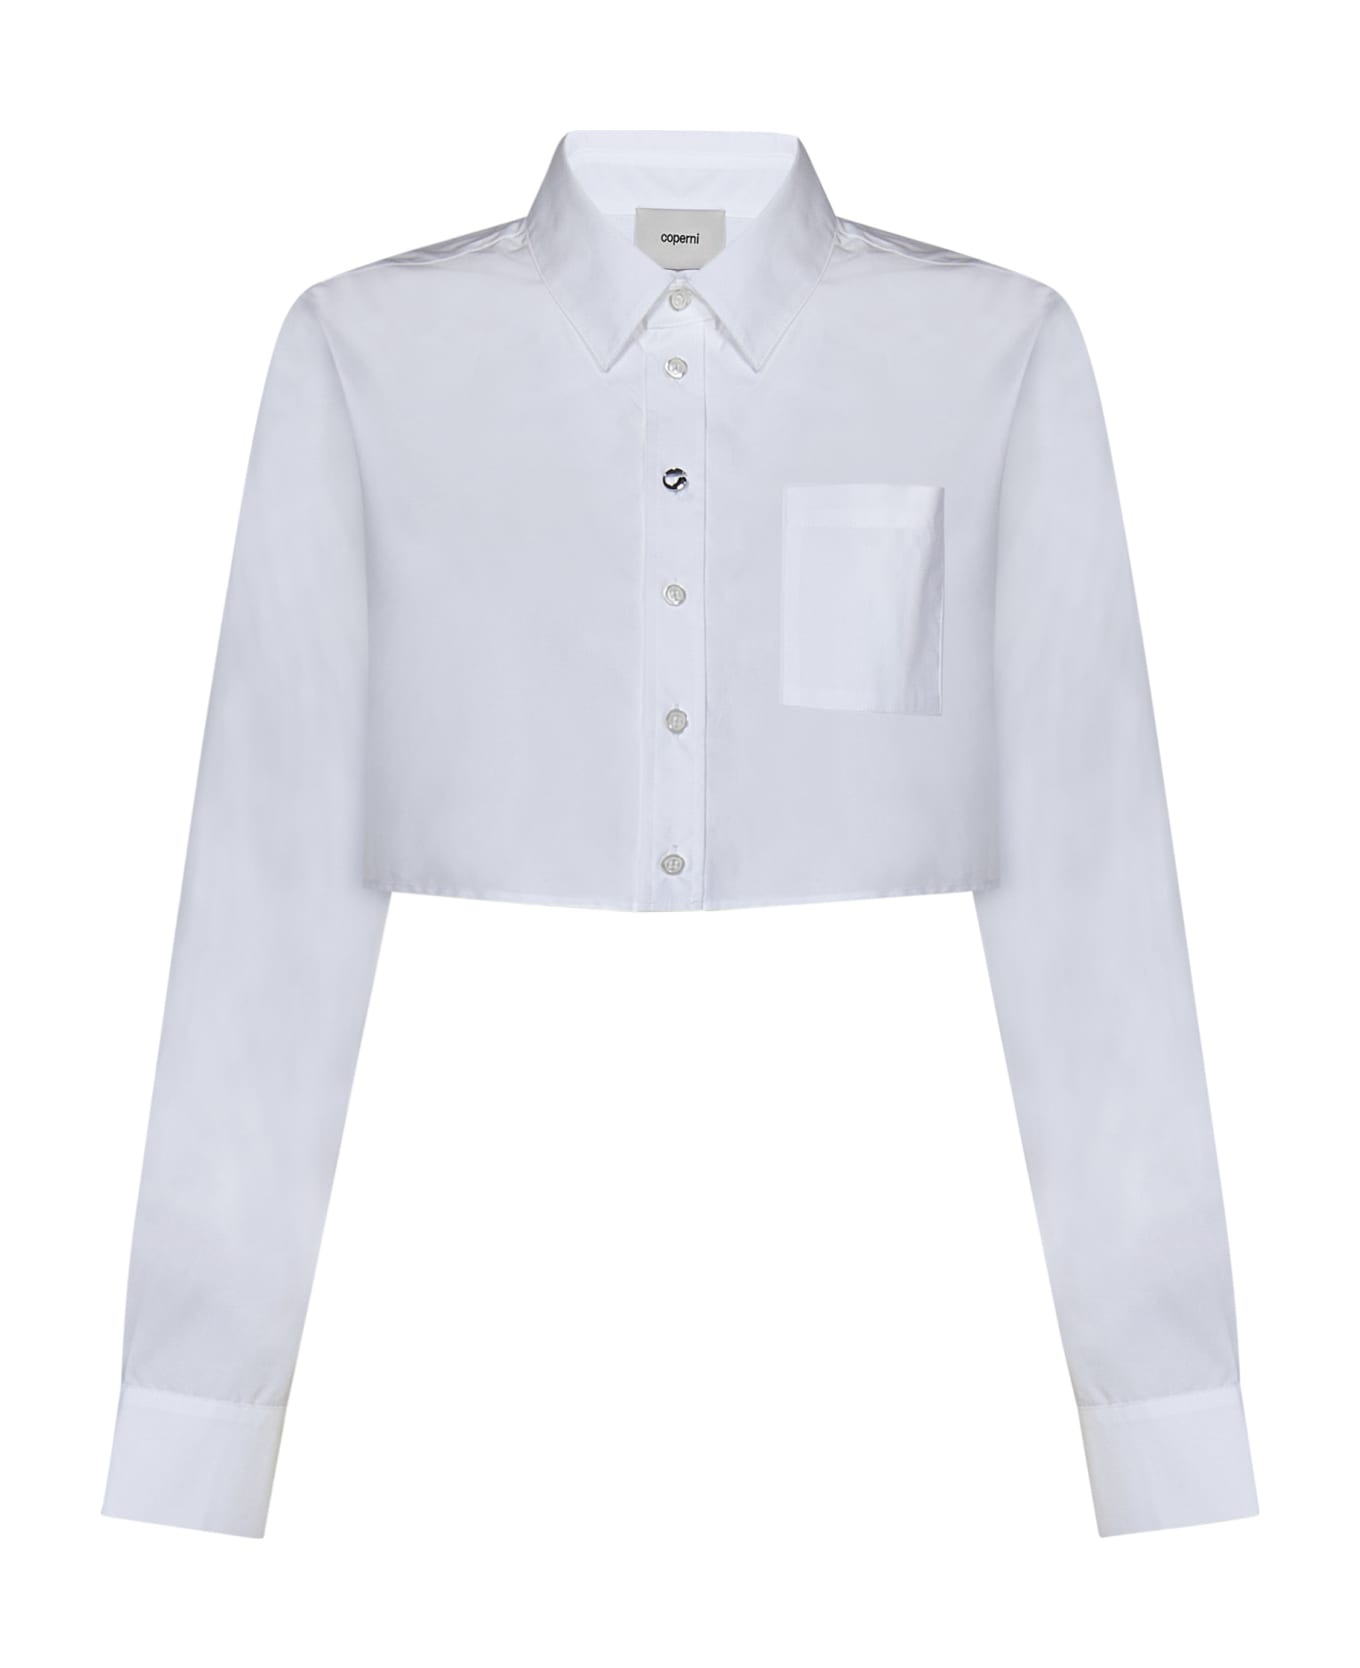 Coperni Shirt - White